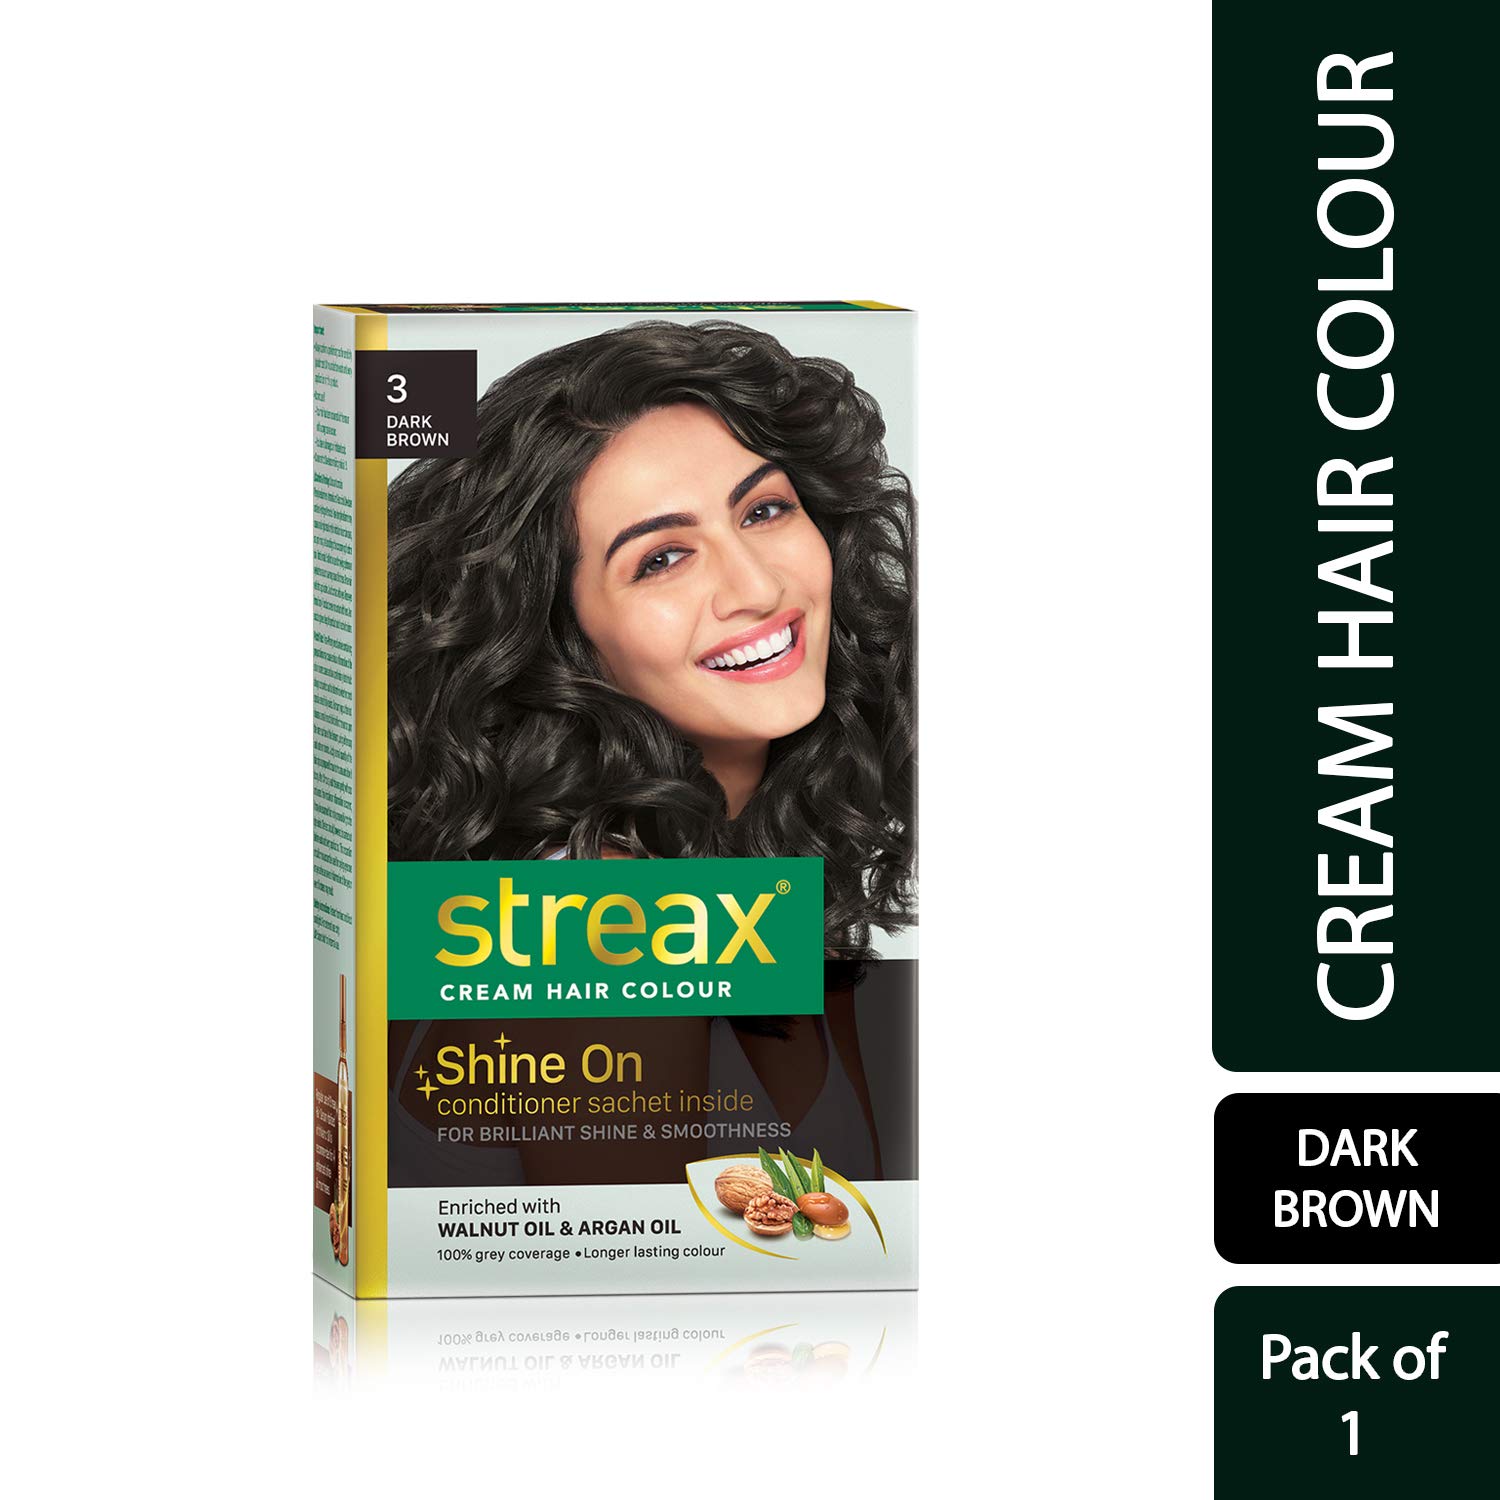 Streax dark brown 3 shampoo hair colour